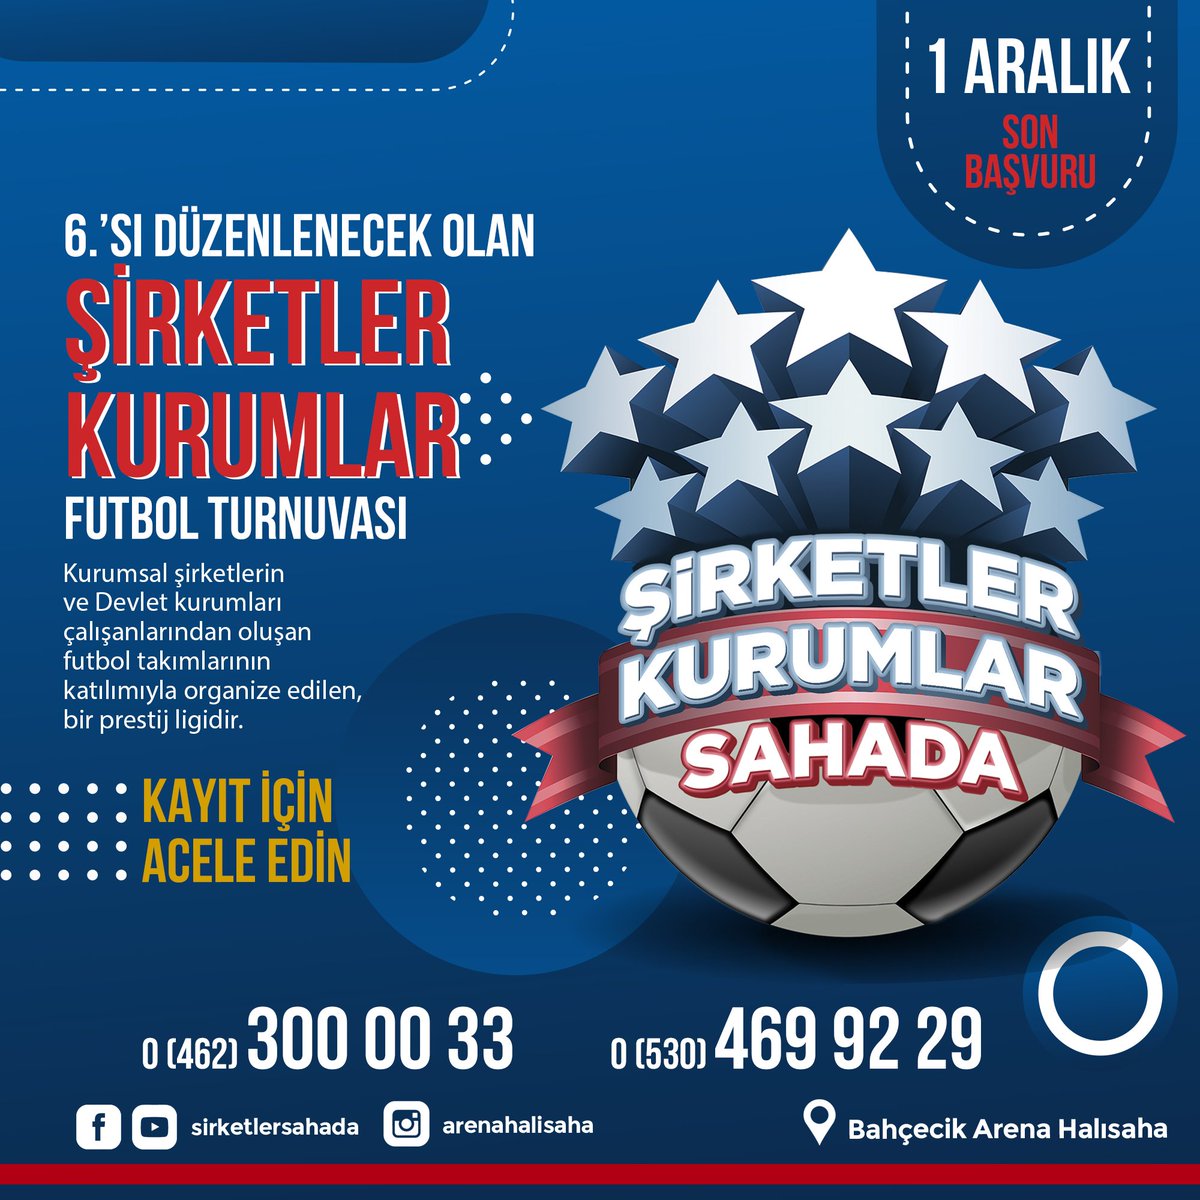 Şirketler ve Kurumlar Arası Halısaha Futbol Ligi 10 Aralık 2021'de Başlıyor.
Kayıt için Acele Edin !
Türkiye'nin En Prestijli Halısaha
 Ligi'nde, sizinde şirketinizde olsun.
 #sirketlersahada #kurumlarsahada #şirketler #kurumlar #turnuva #Trabzon #Trabzonspor #arenahalısaha #spor